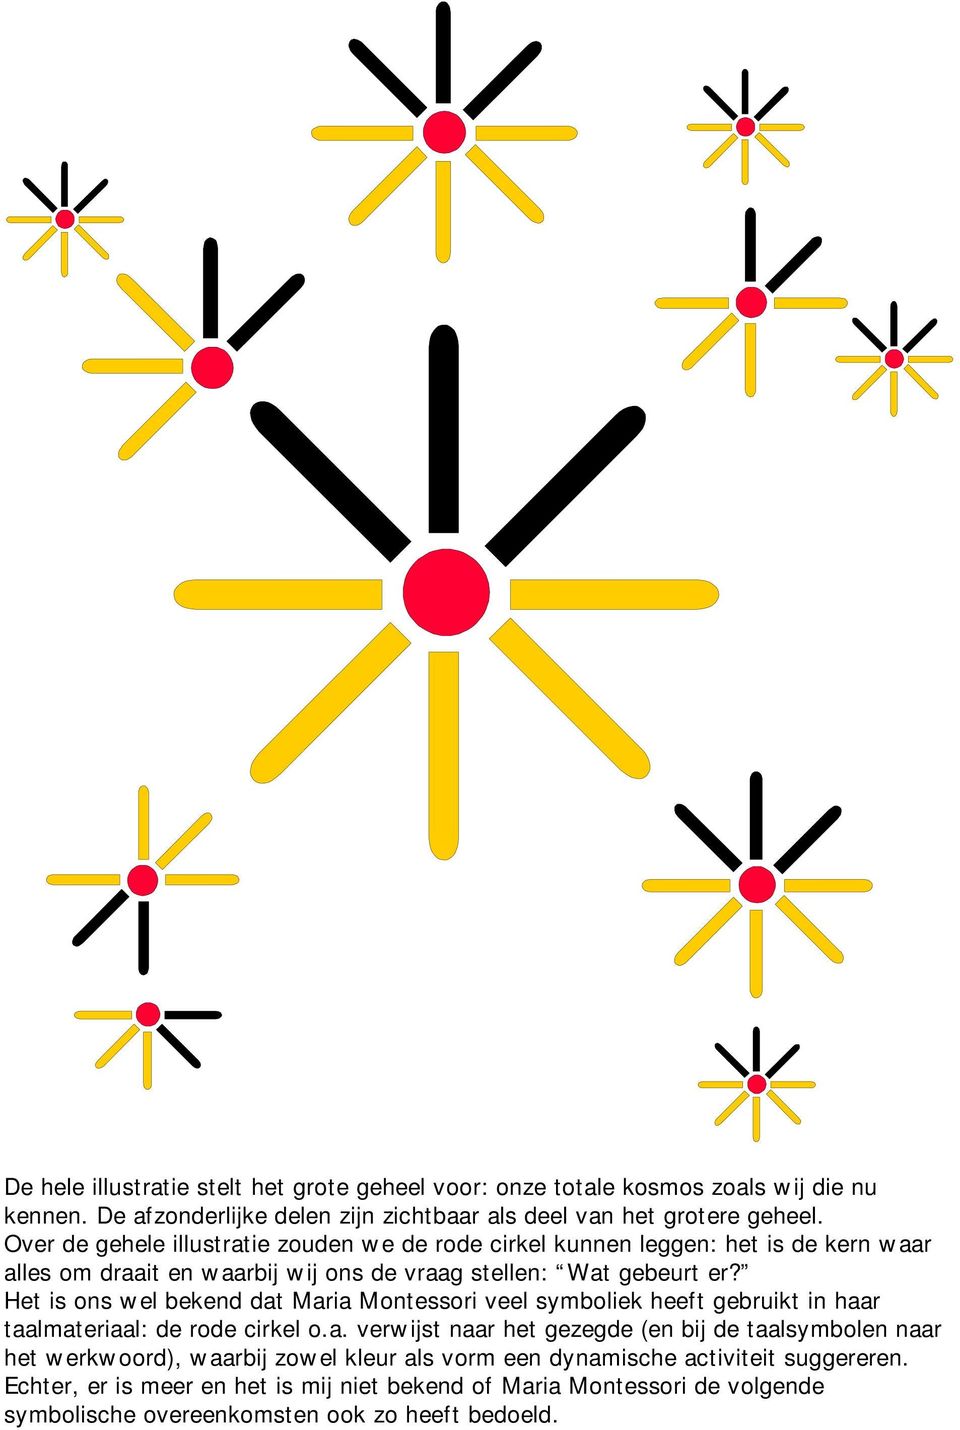 Het is ons wel bekend dat Maria Montessori veel symboliek heeft gebruikt in haar taalmateriaal: de rode cirkel o.a. verwijst naar het gezegde (en bij de taalsymbolen naar het werkwoord), waarbij zowel kleur als vorm een dynamische activiteit suggereren.